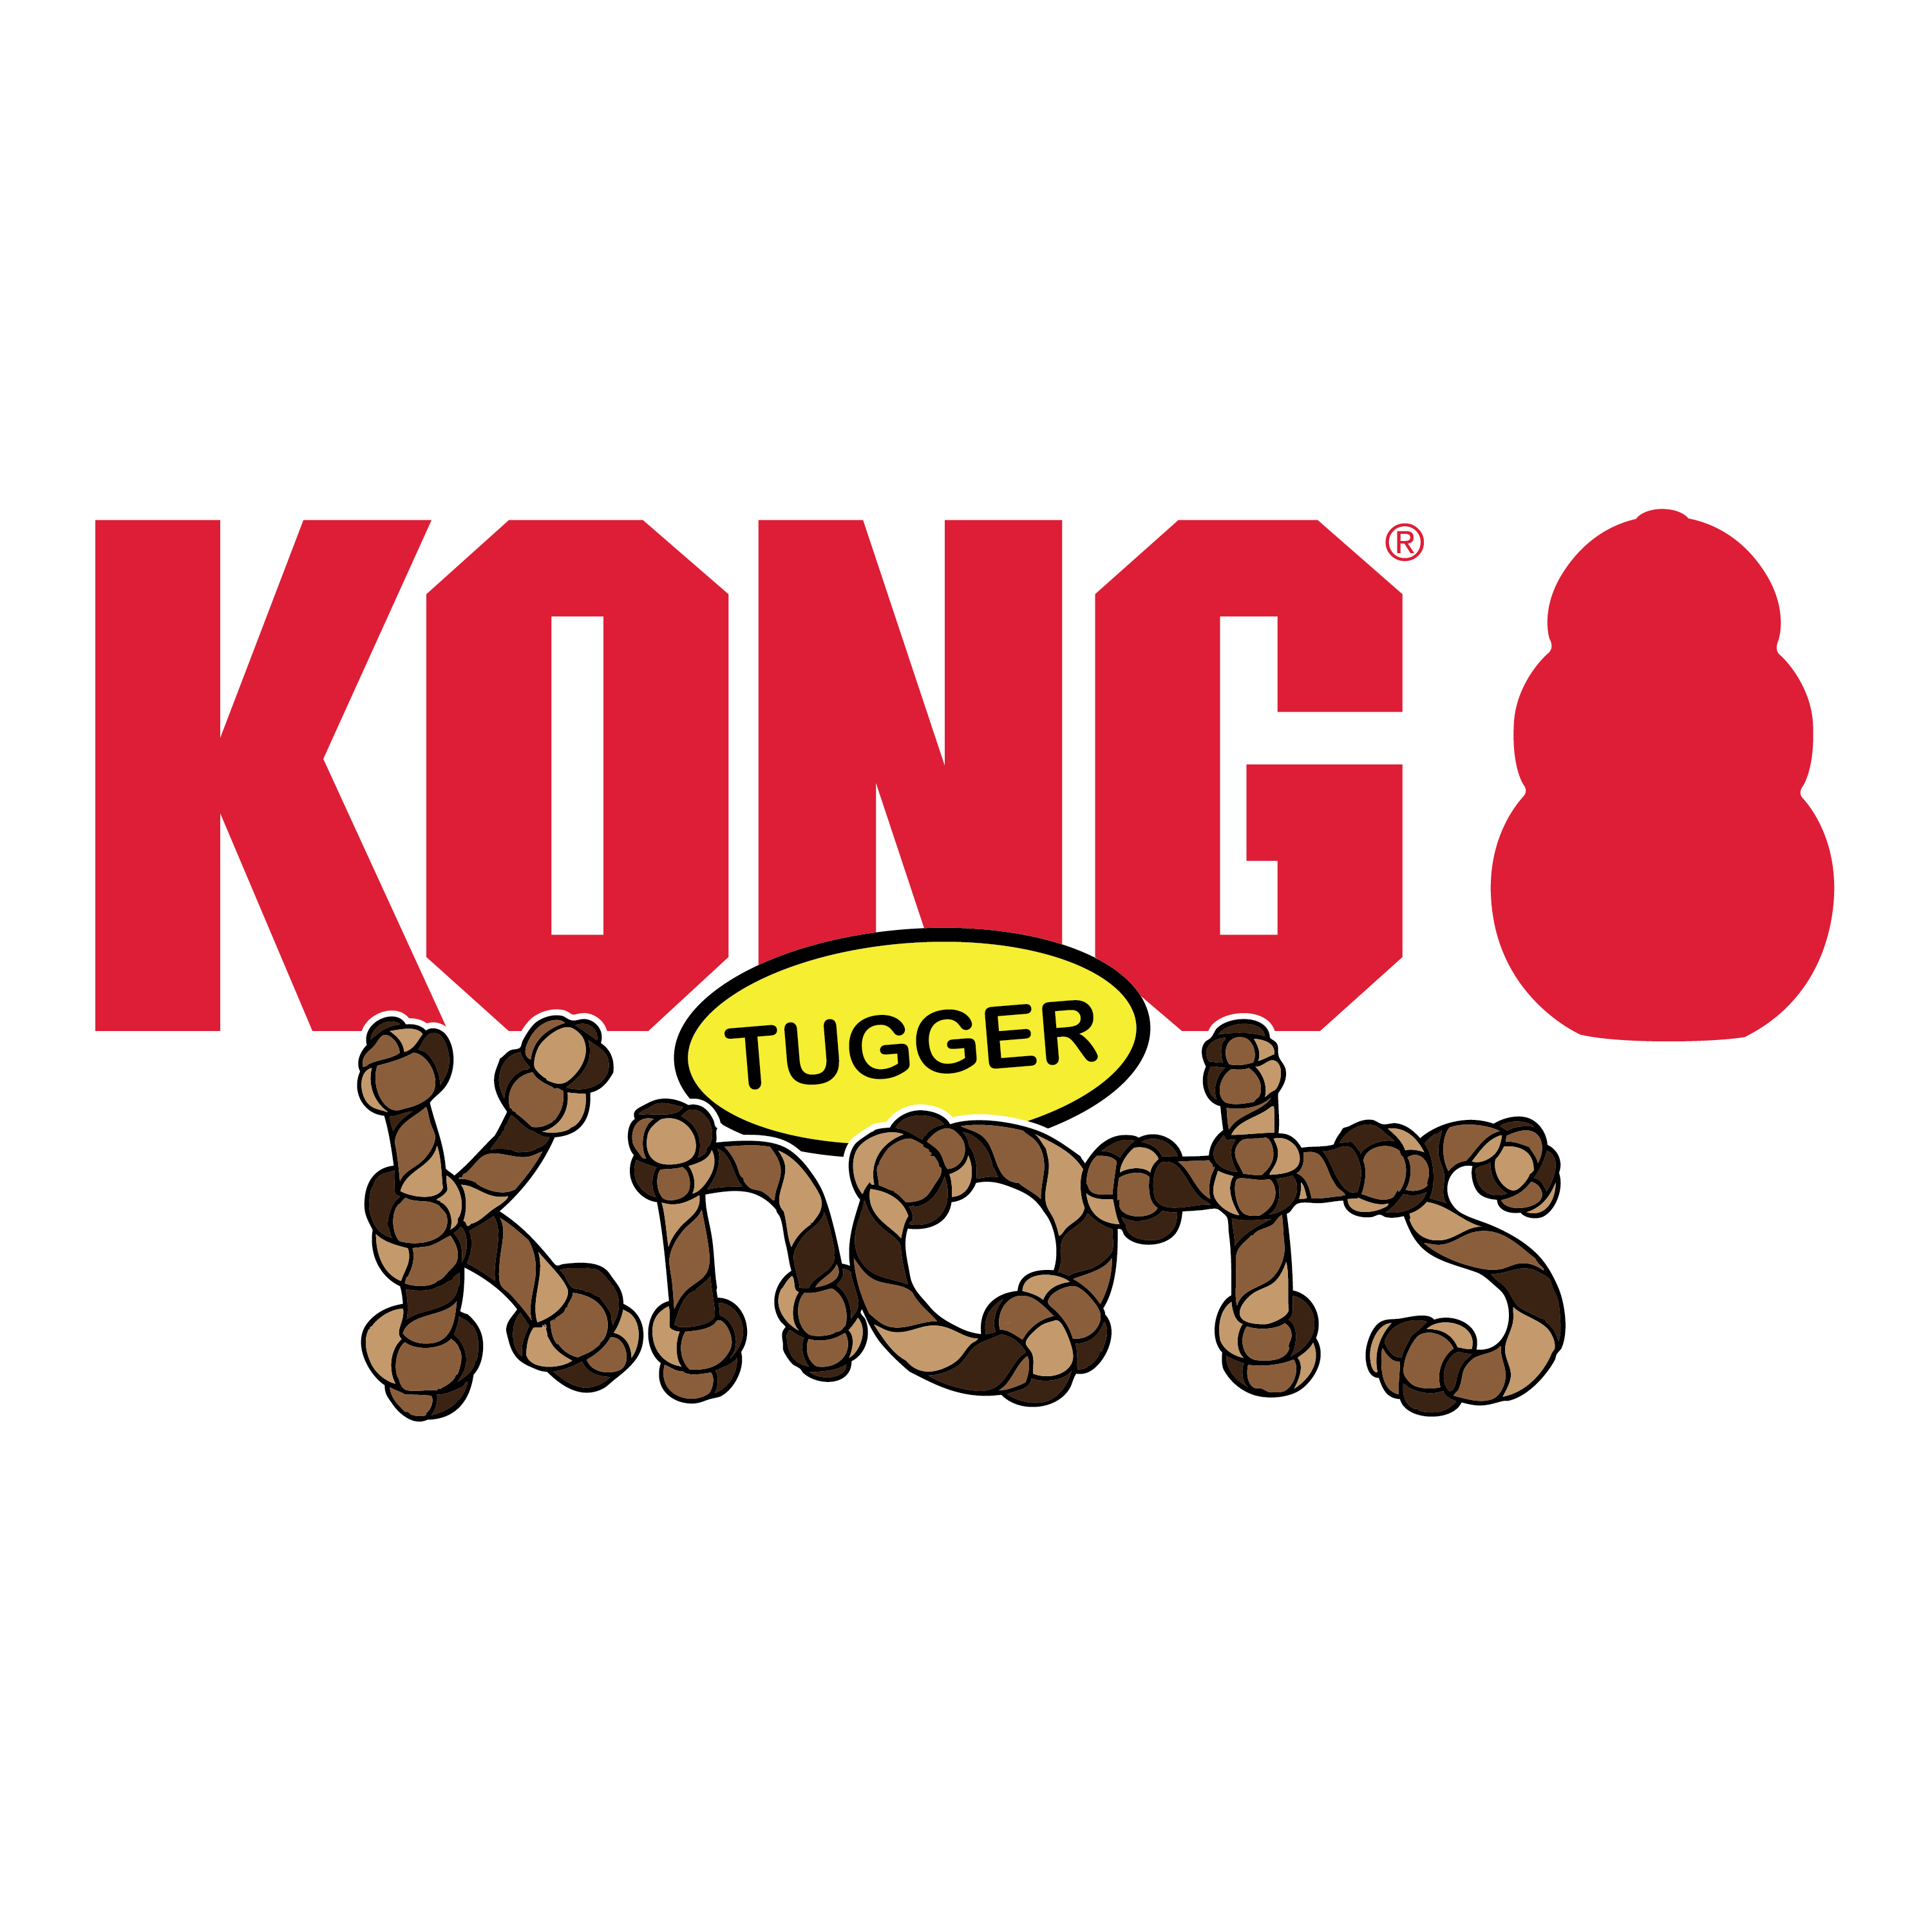 Tugger Knots Frog alt1 immagine del prodotto